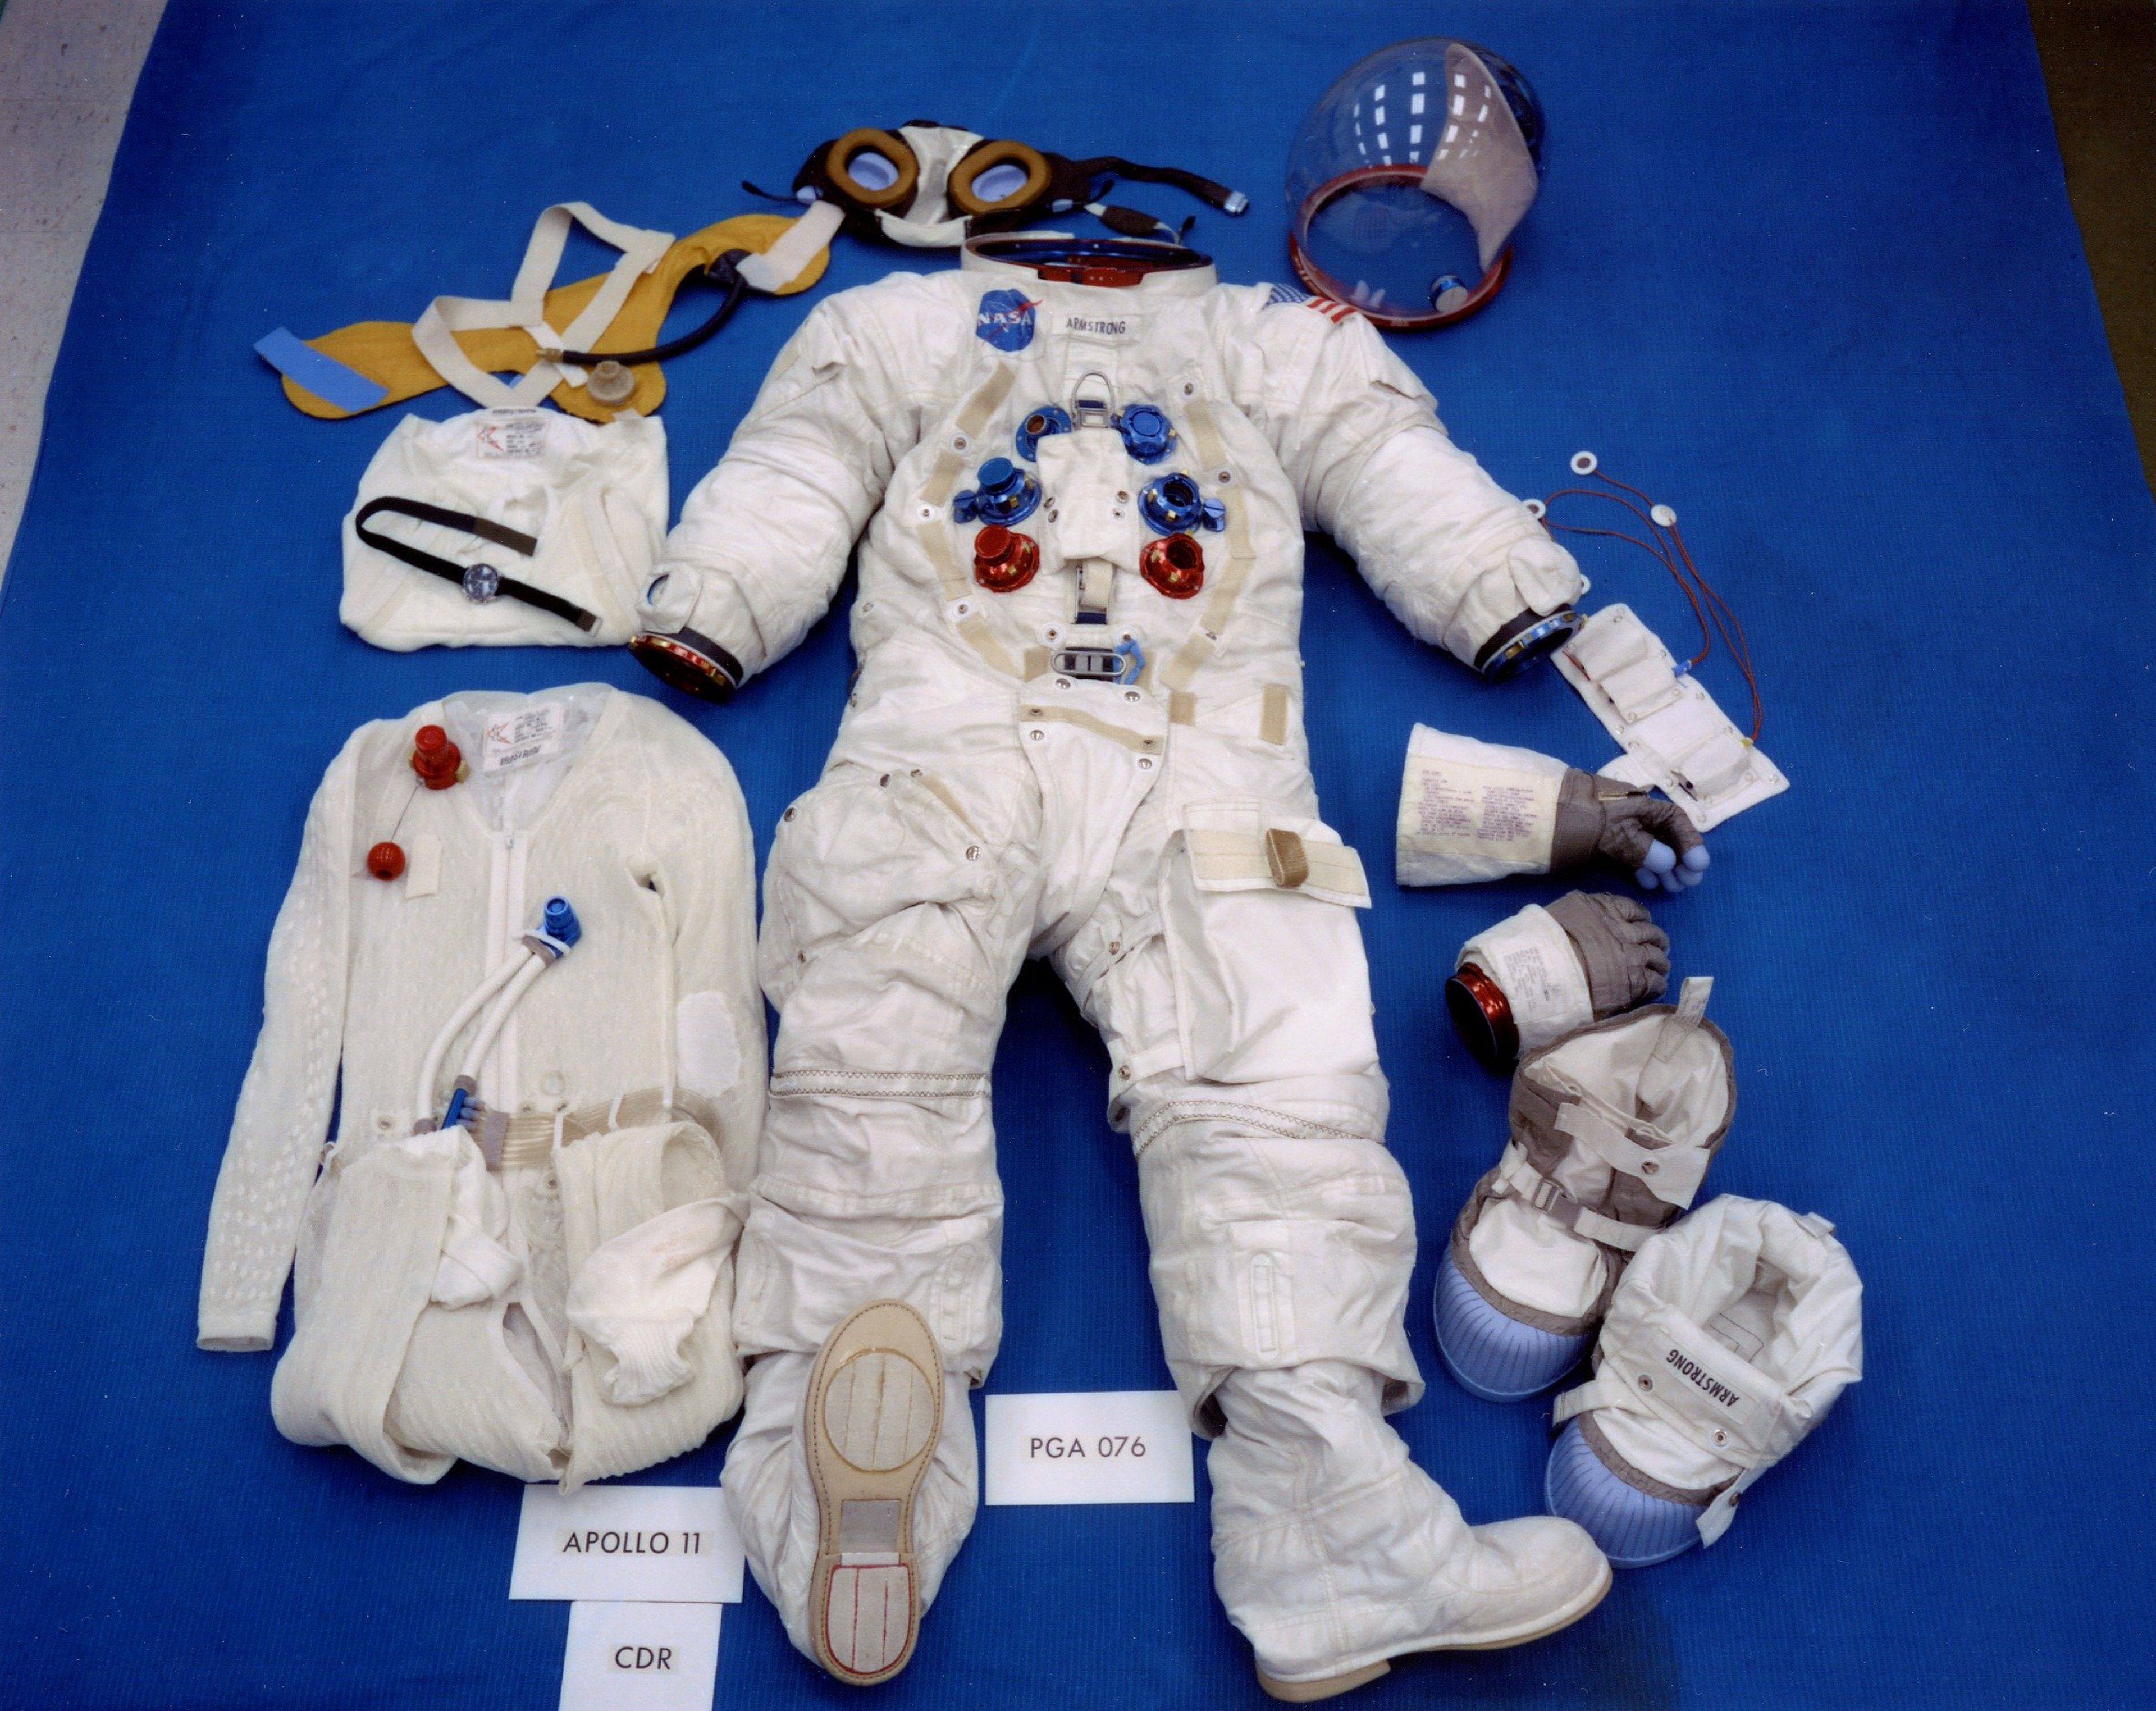 Traje espacial del Apollo 11